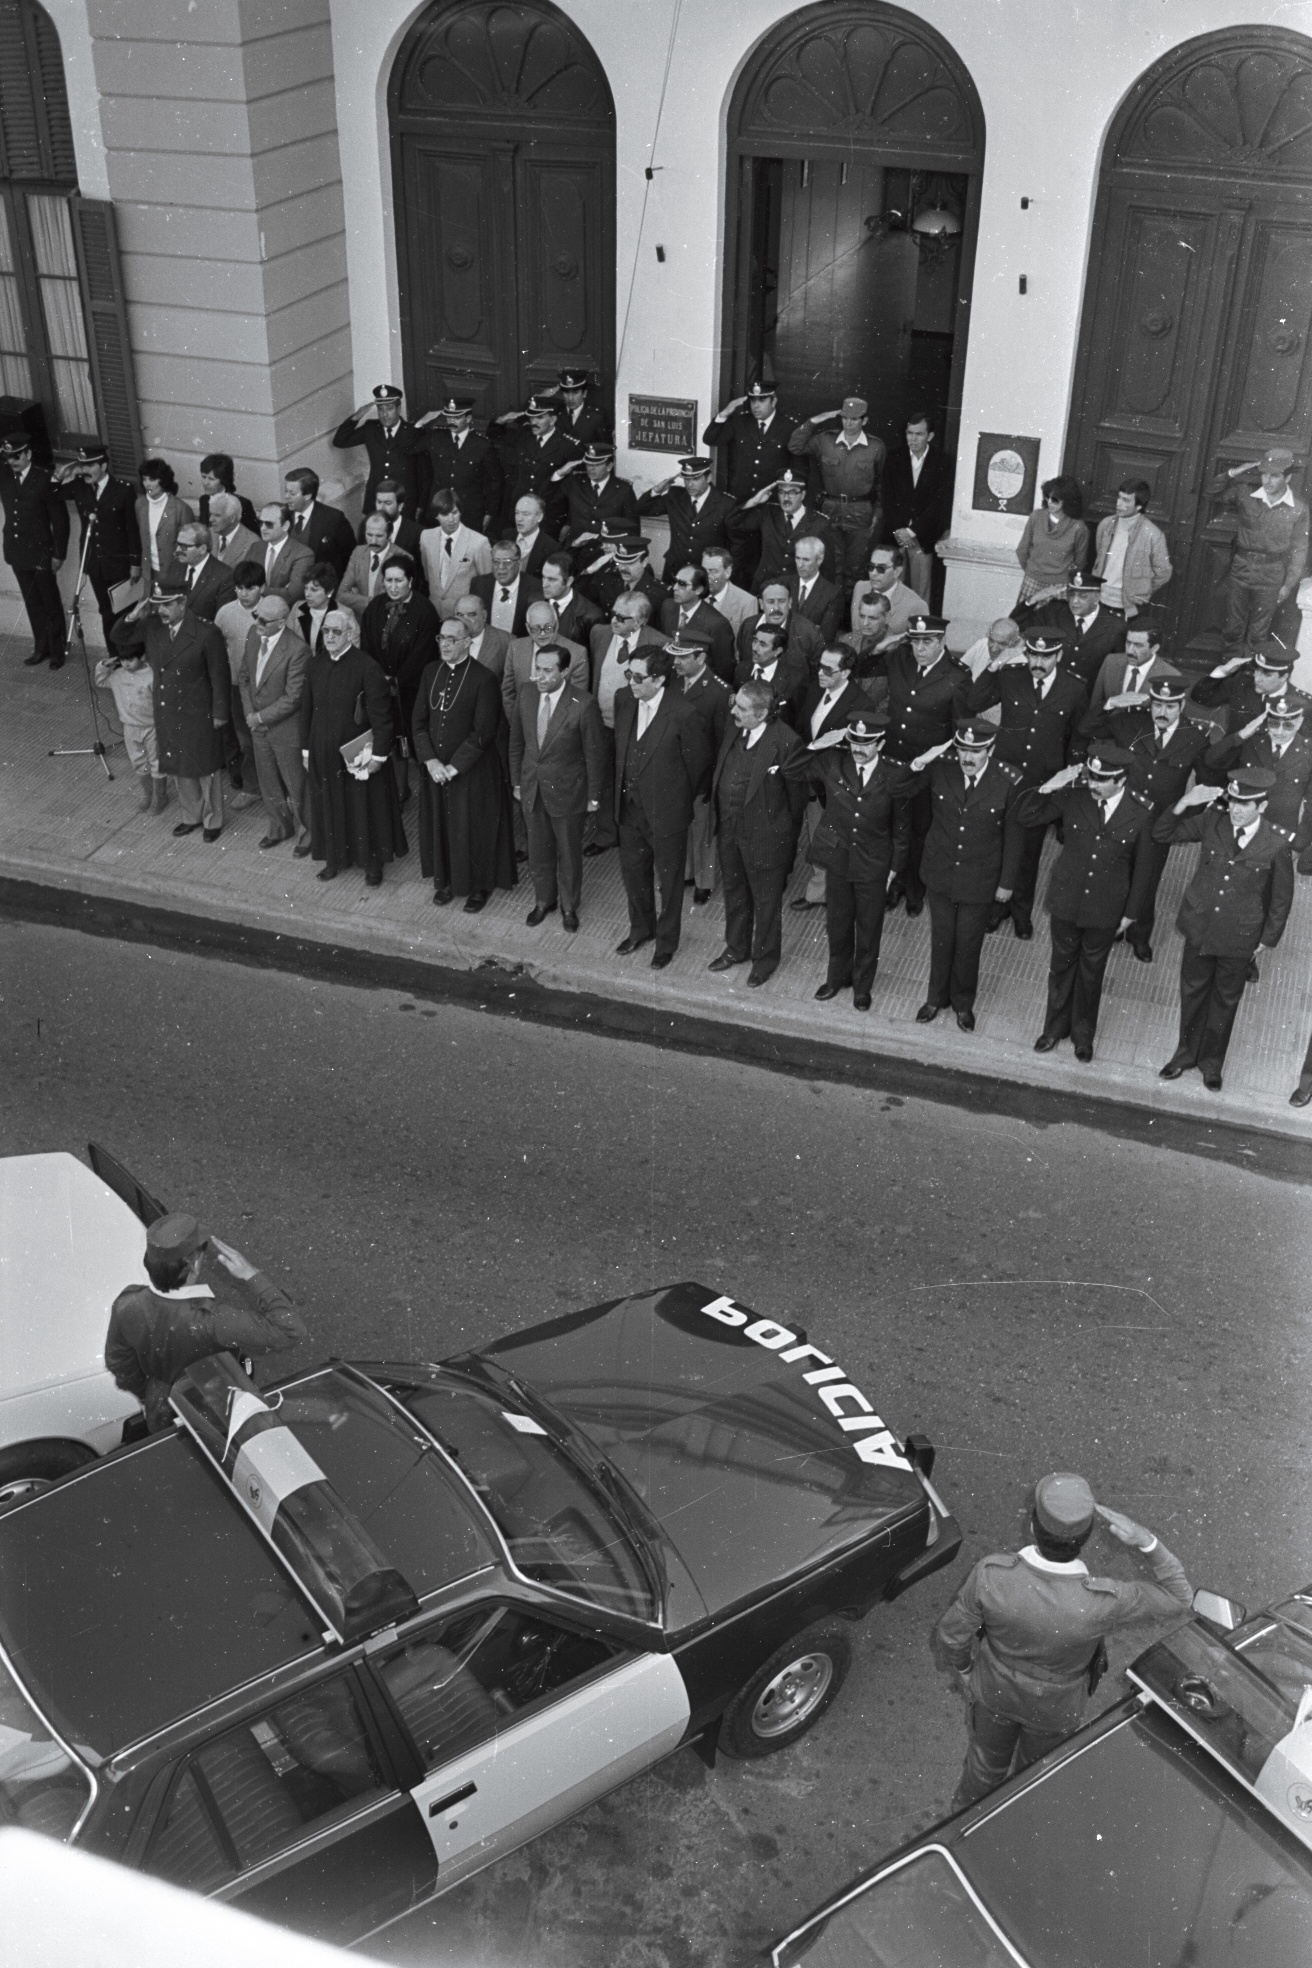 El 30-04-1985durante un acto realizado en la entrada de Casa de Gobierno, el gobernador Adolfo Rodríguez Saá, acompañado del gabinete, entrega móviles a la Policía. En la imagen se puede ver a gran parte de la Plana Mayor de la fuerza de seguridad y al entonces Monseñor Juan Rodolfo Laise.